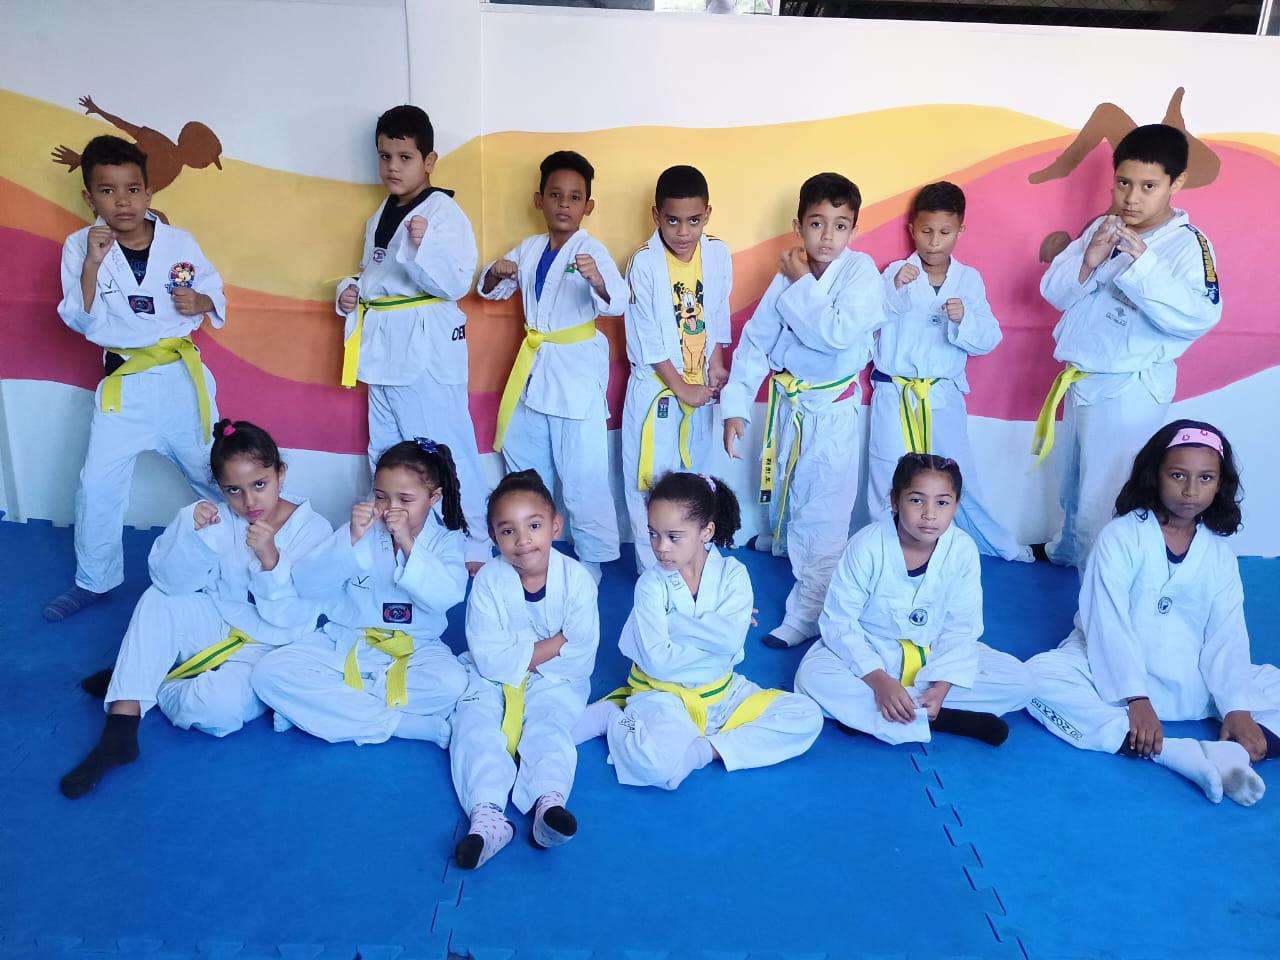 Na imagem, grupo de crianças com kimono branco e faixa amarela na cintura, elas estão em cima de um tatame.